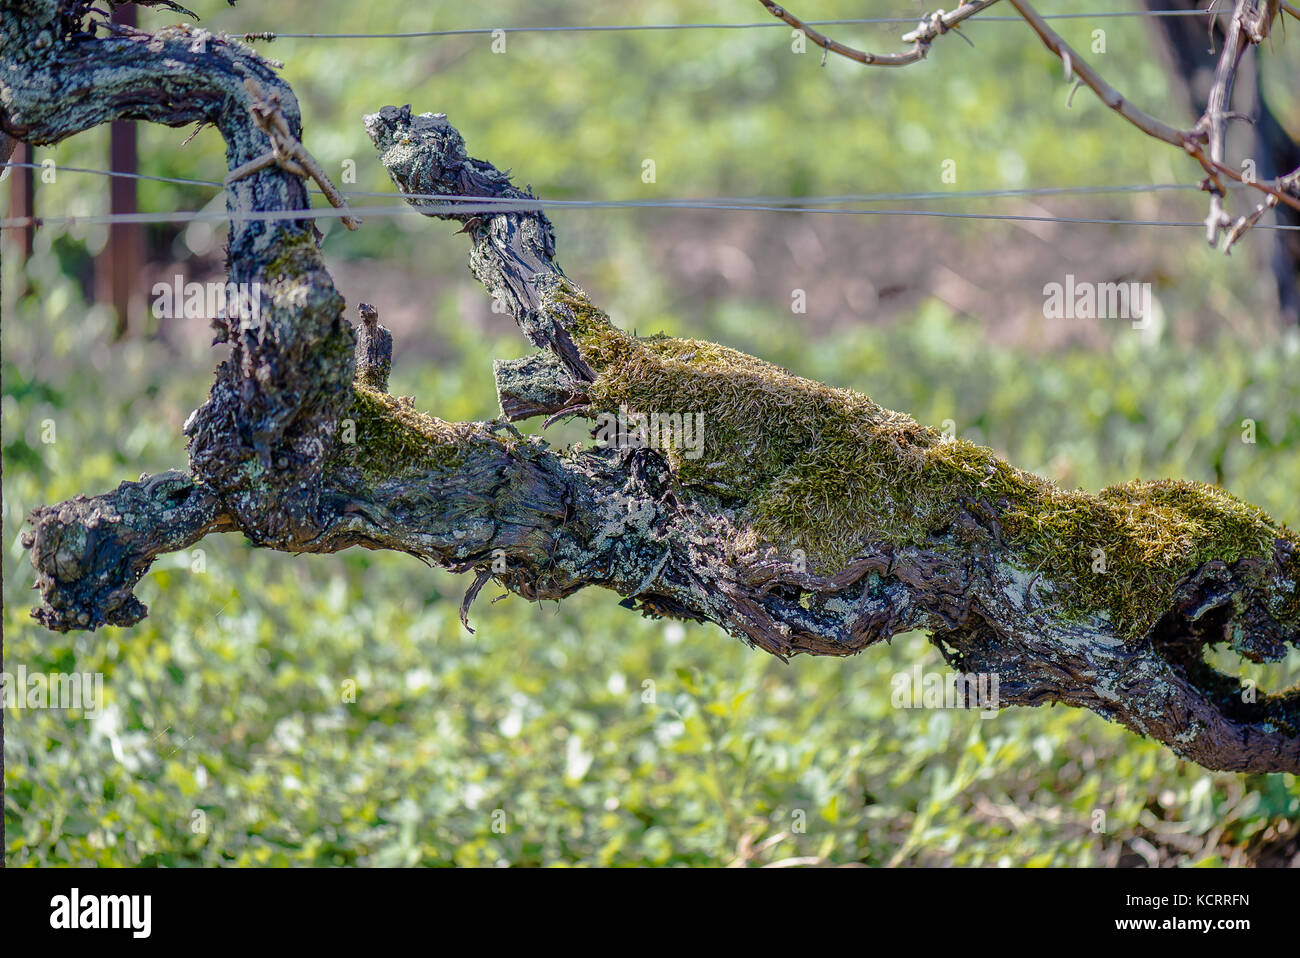 oldest vines worldwide (1618), Weingut Oberhofer, Rhodt unter Rietburg, Palatinate, Germany Stock Photo